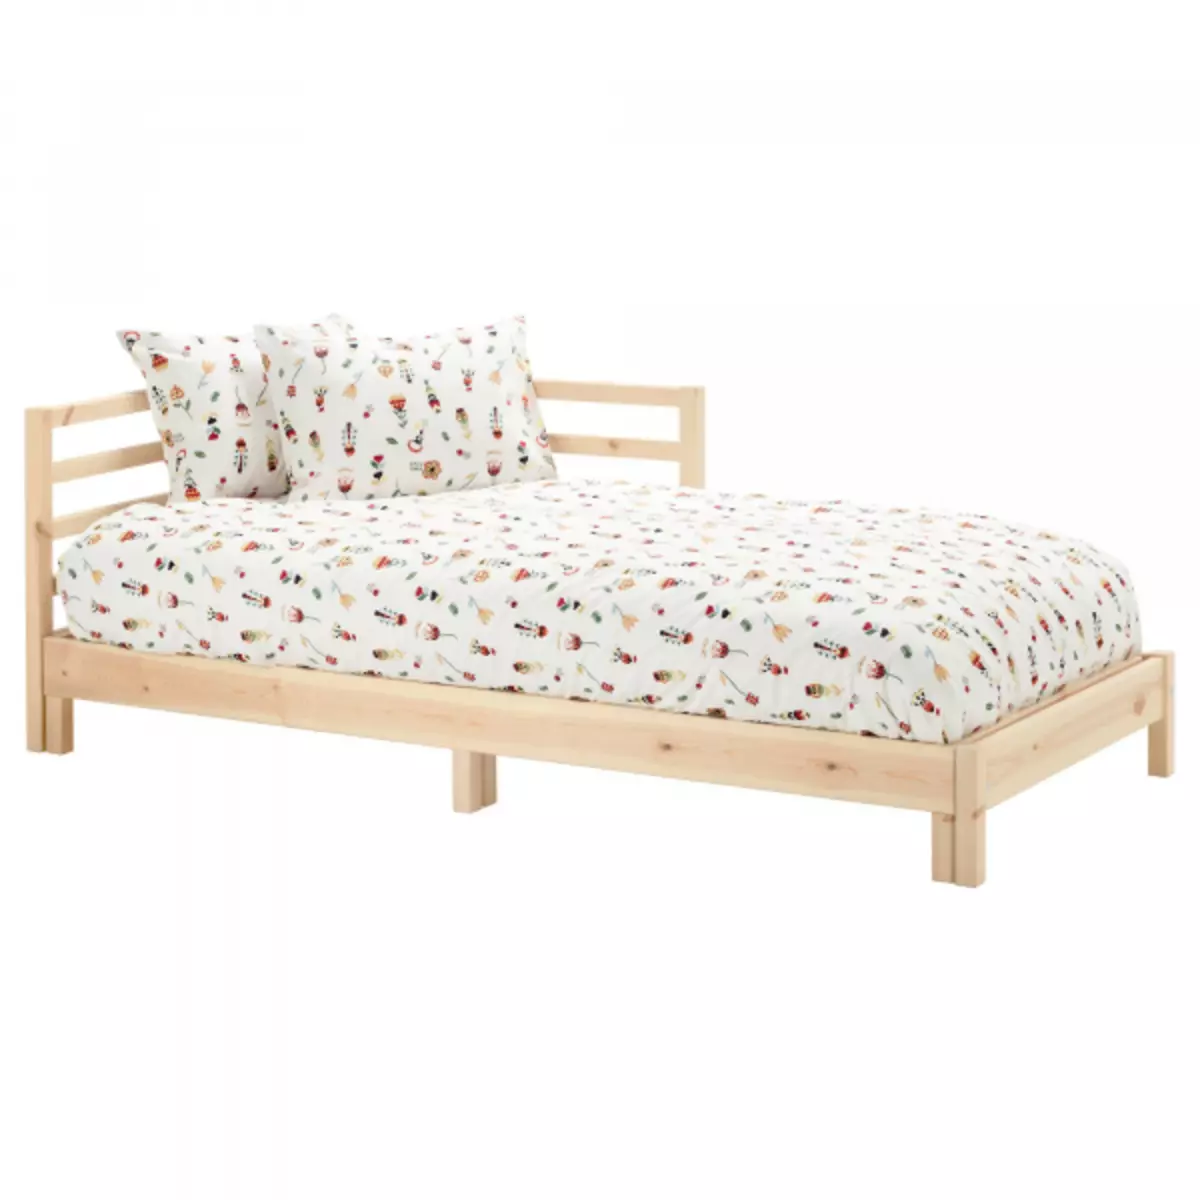 Висота ліжка з матрацом від статі: стандарт спального місця